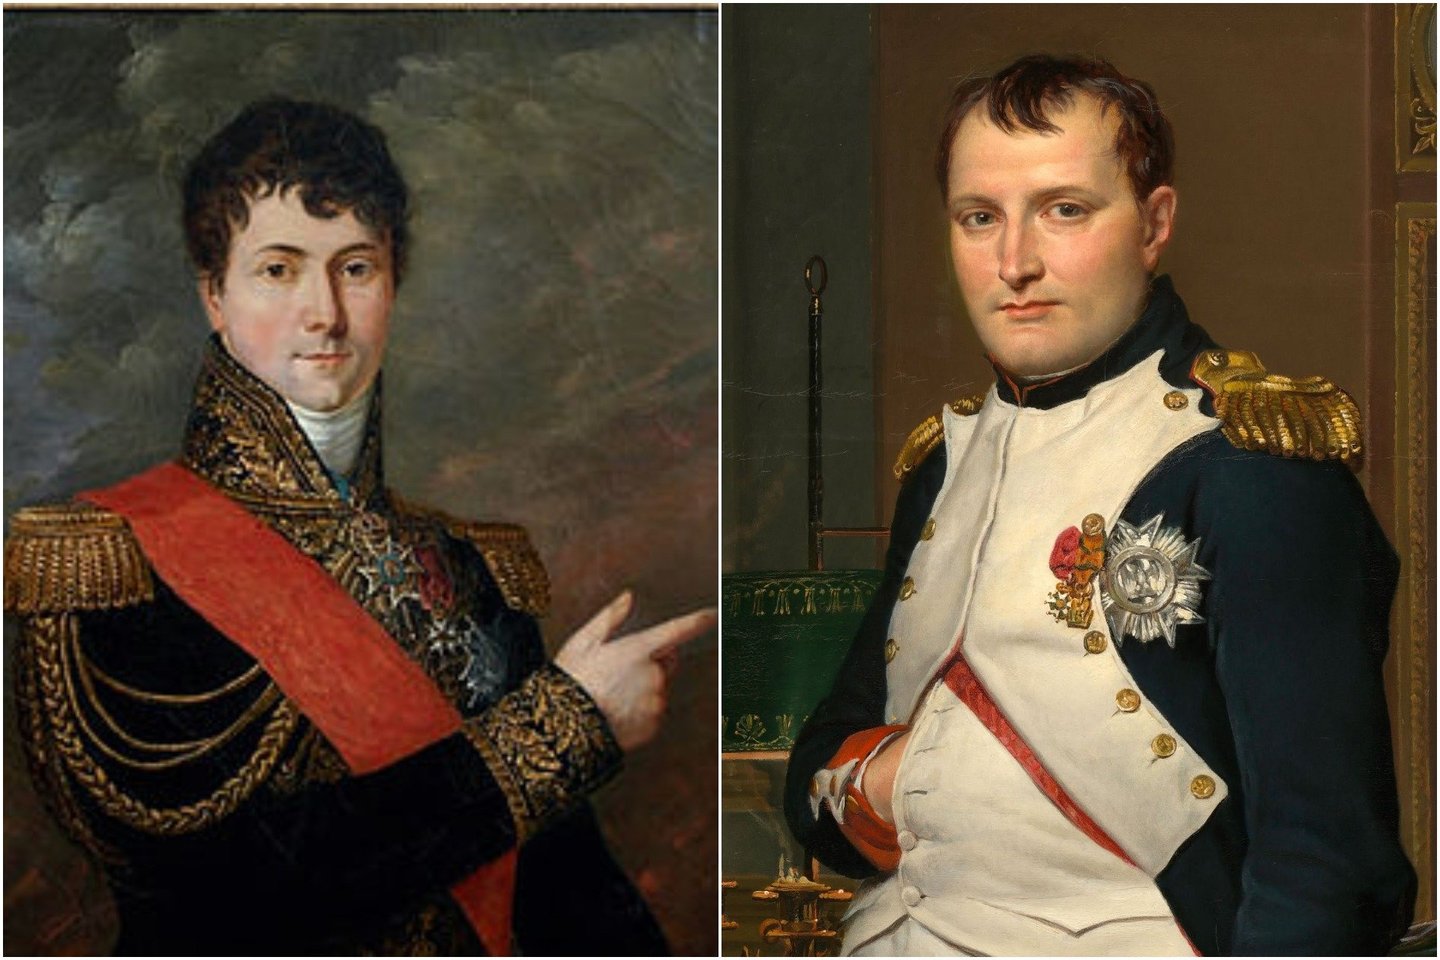  Sakoma, kad išgirdęs apie C.E. Gudino mirtį, Napoleonas pravirko ir liepė išraižyti žuvusio generolo vardą ant Triumfo arkos.<br> Wikimedia commons